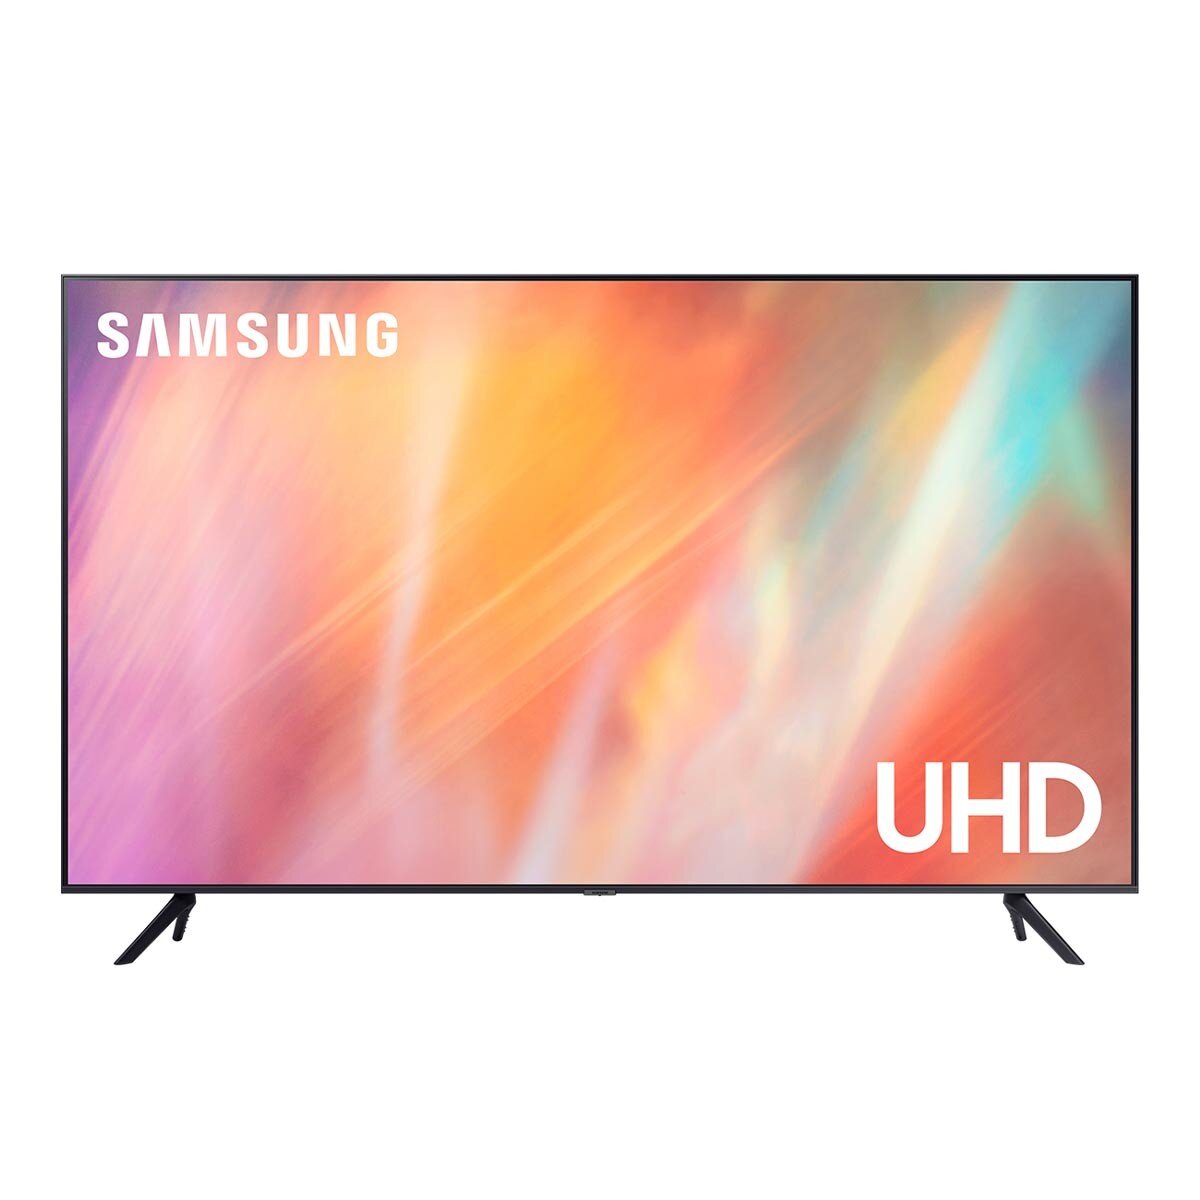 Samsung 55吋 4K UHD 電視 UA55AU7700WXZW + 2.1聲道含重低音 HW-A550